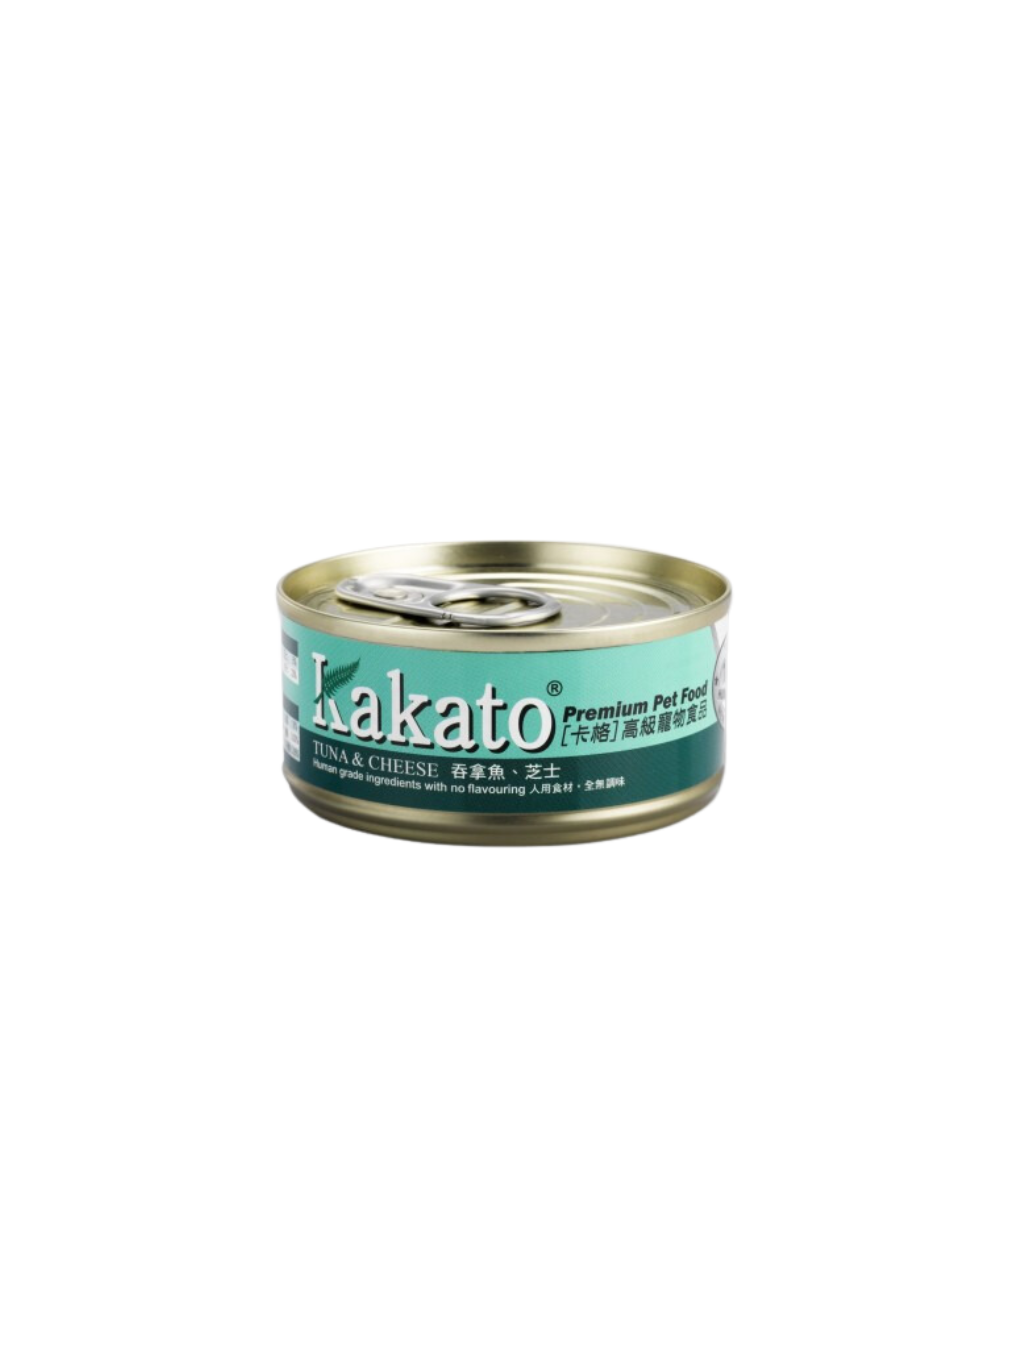 Kakato | 高級貓罐頭 吞拿魚、芝士